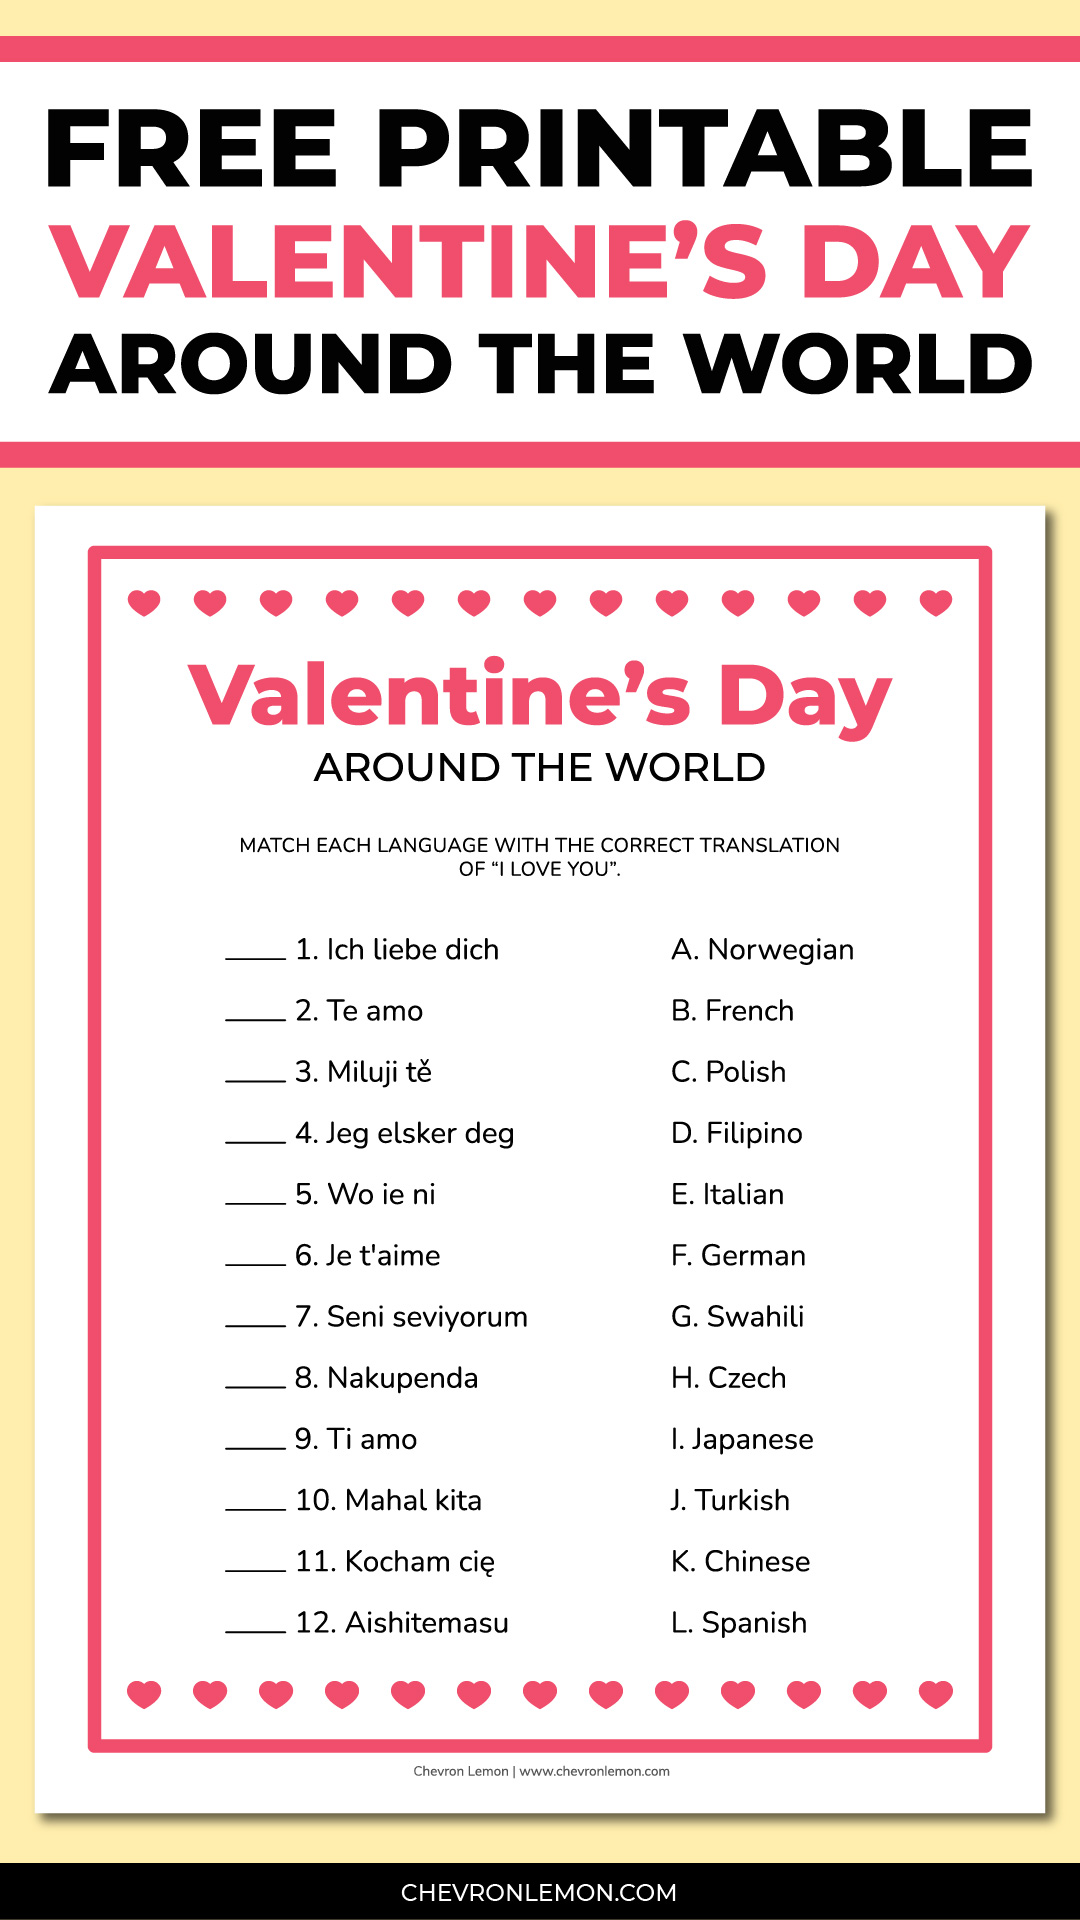 Valentine's Day around the world game